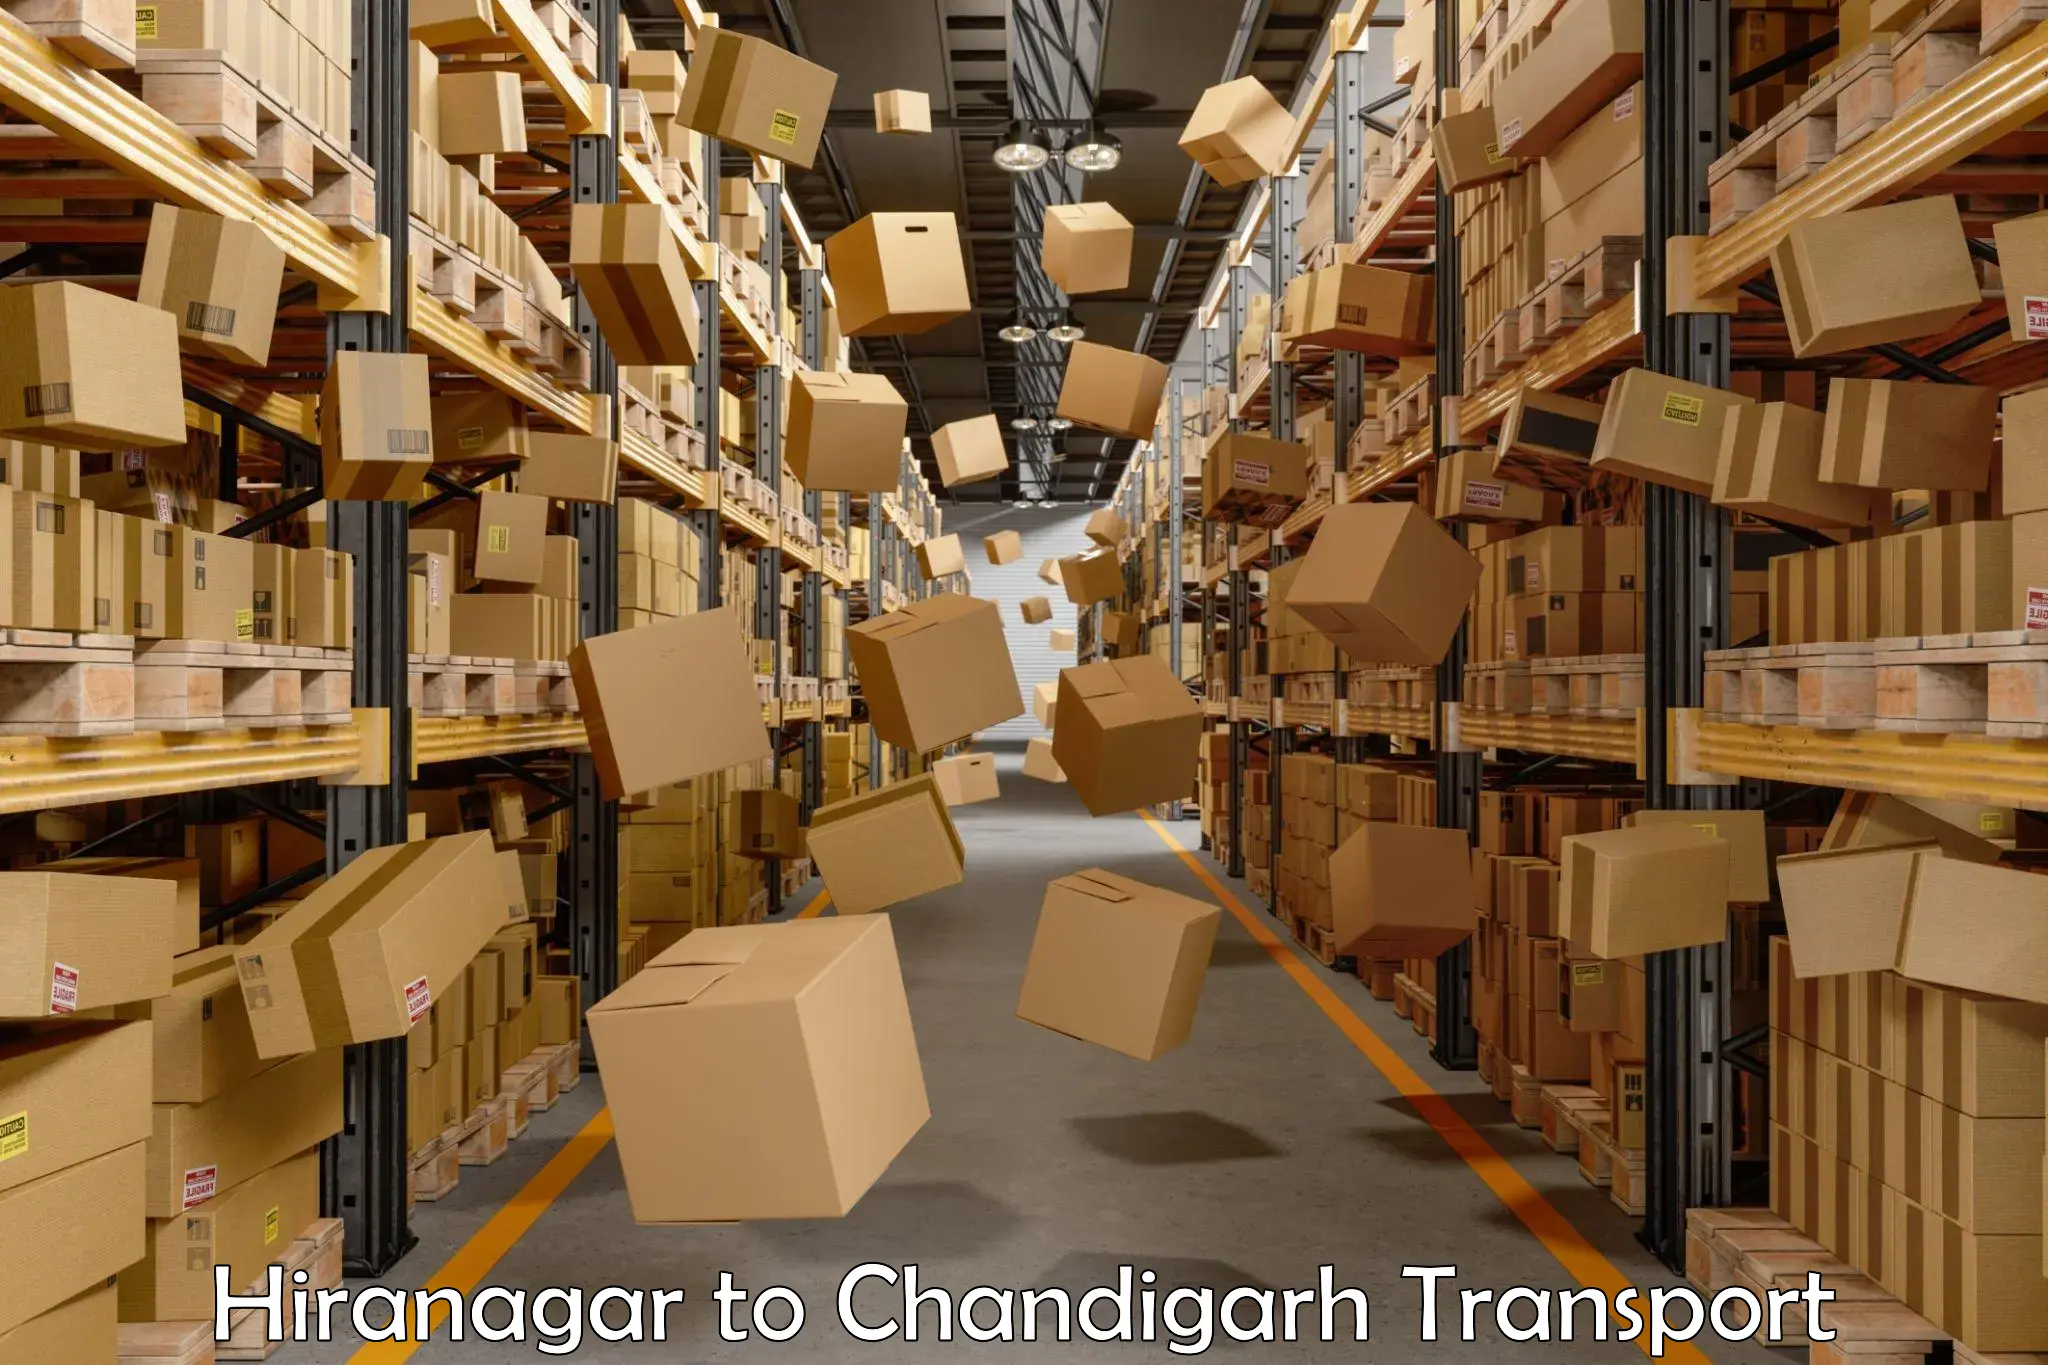 Furniture transport service Hiranagar to Chandigarh